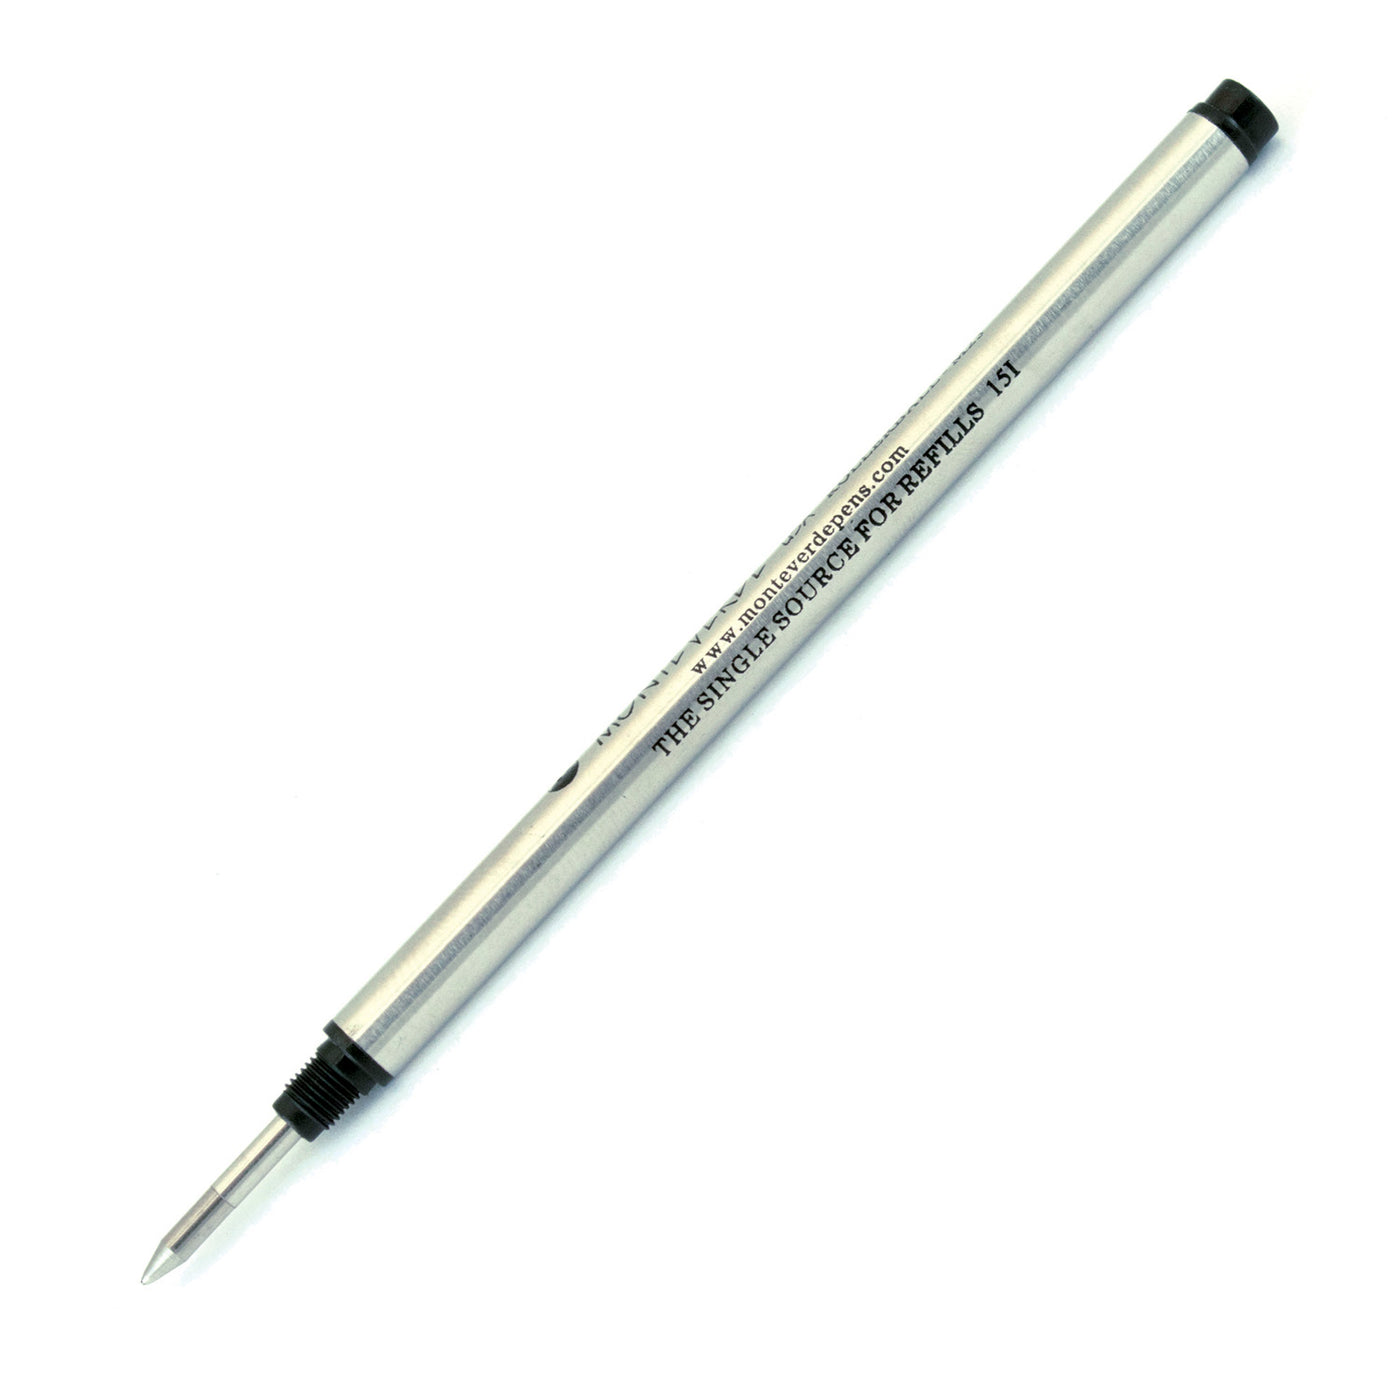 Monteverde Roller Ball Pen Refill for Montblanc - Medium - Black - Pack of 2 2